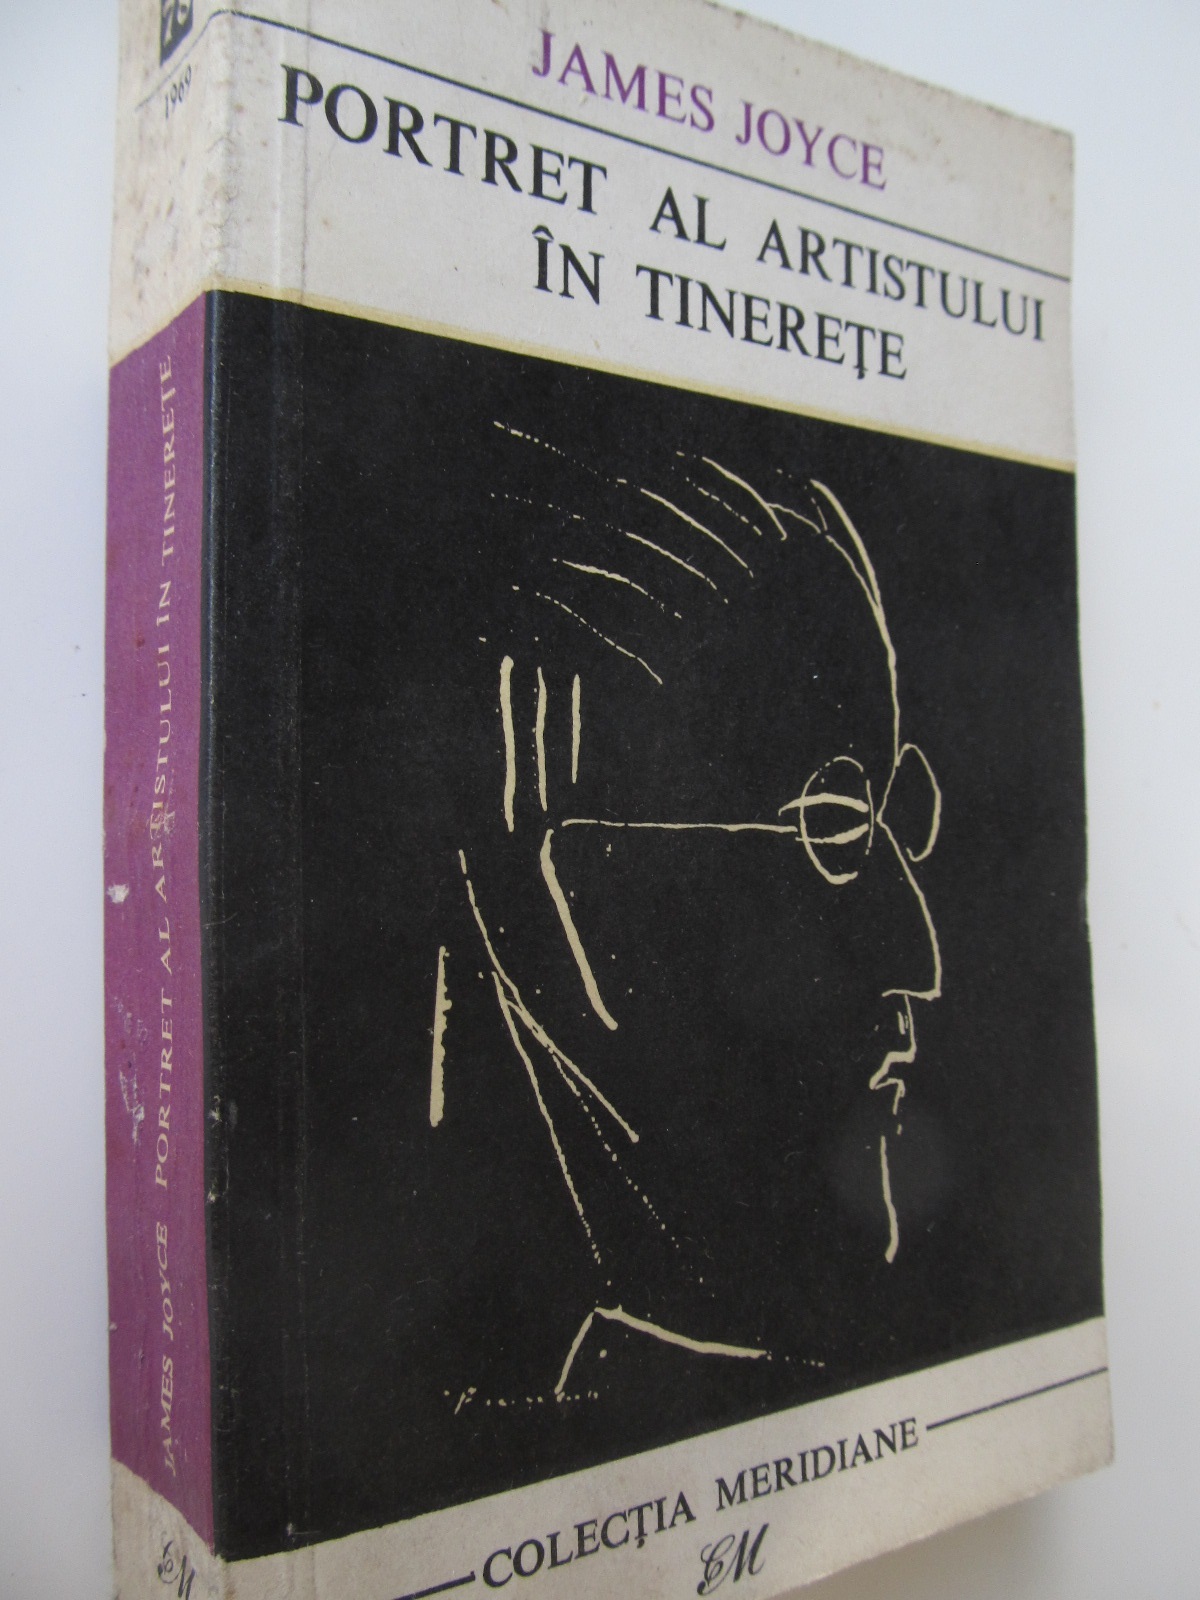 Portret al artistului in tinerete - James Joyce | Detalii carte